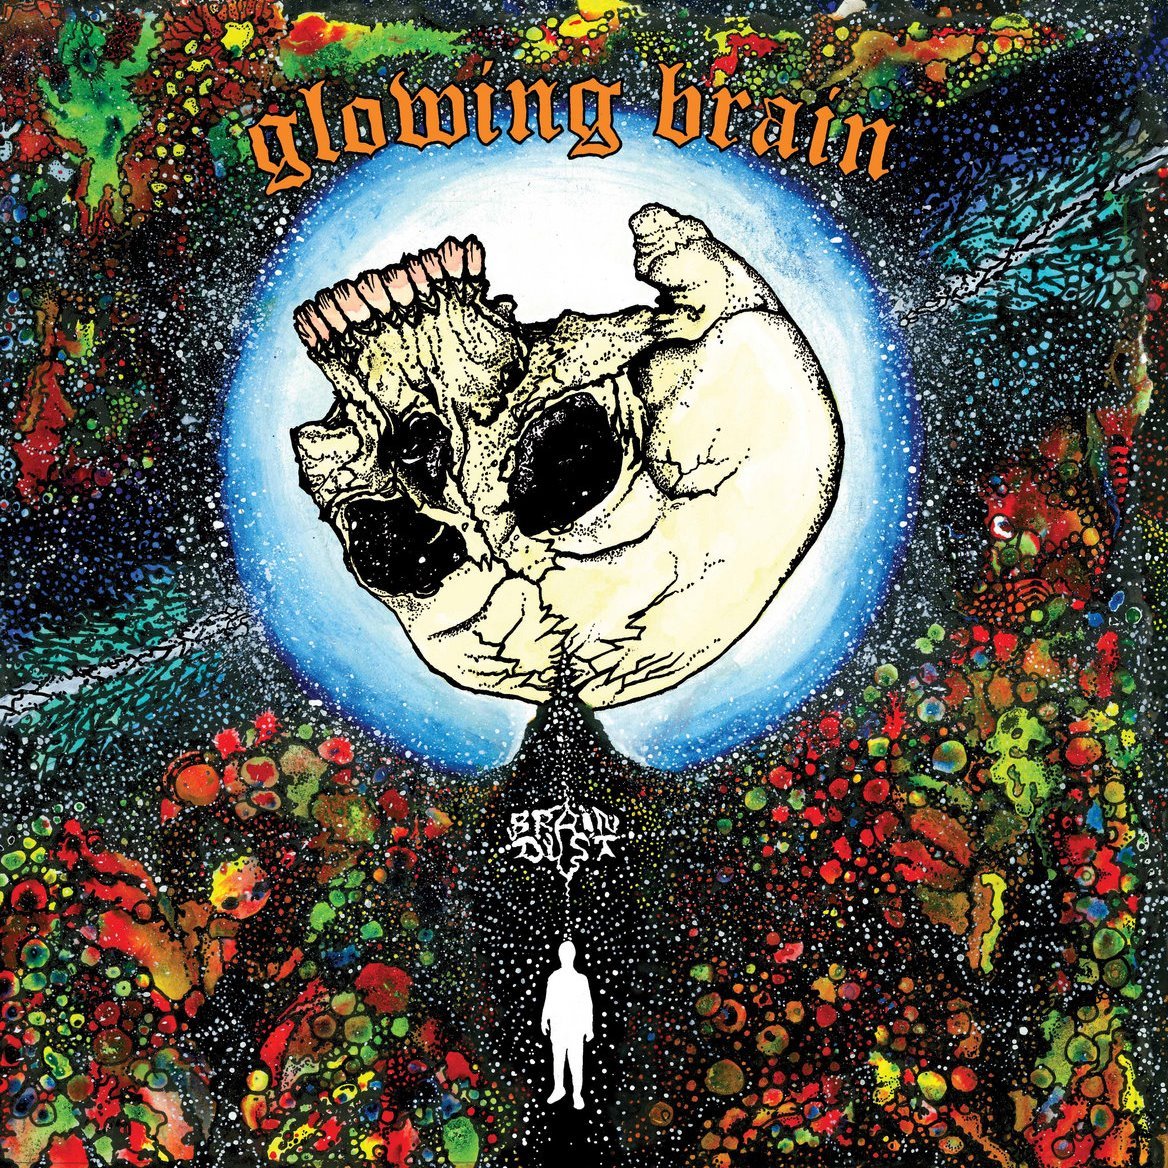 GLOWING BRAIN - 'Brain Dust' LP